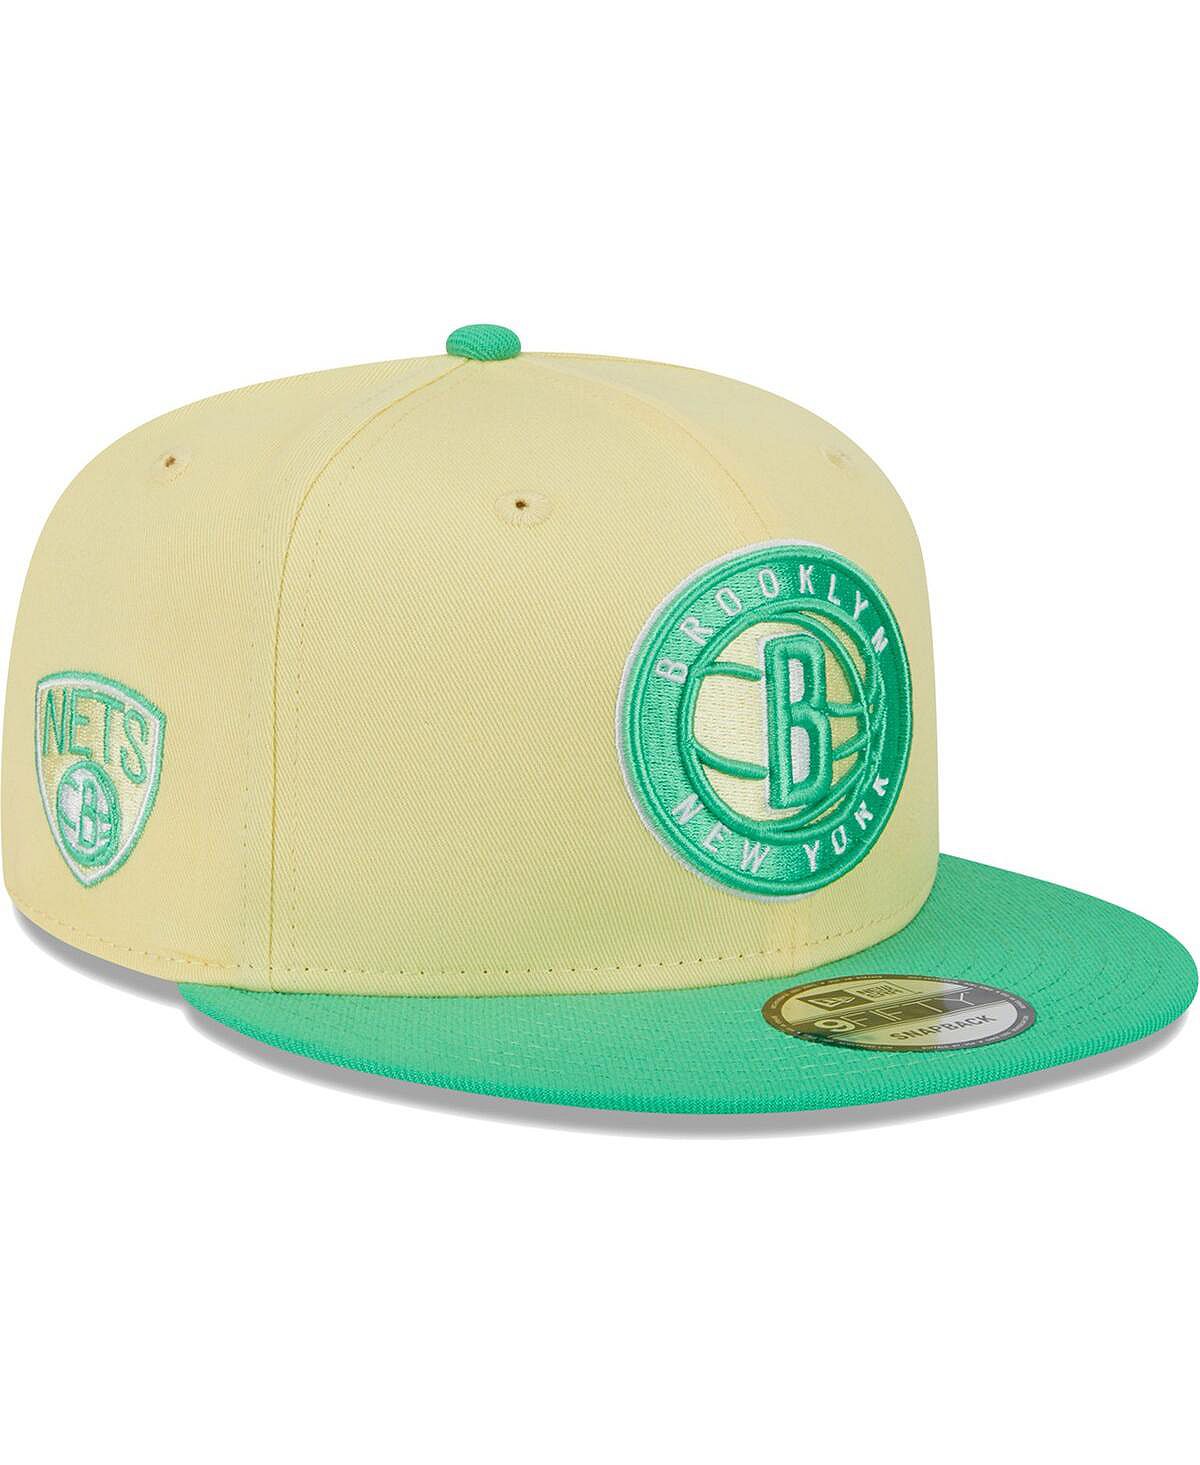 Мужская желто-зеленая кепка Brooklyn Nets 9FIFTY New Era